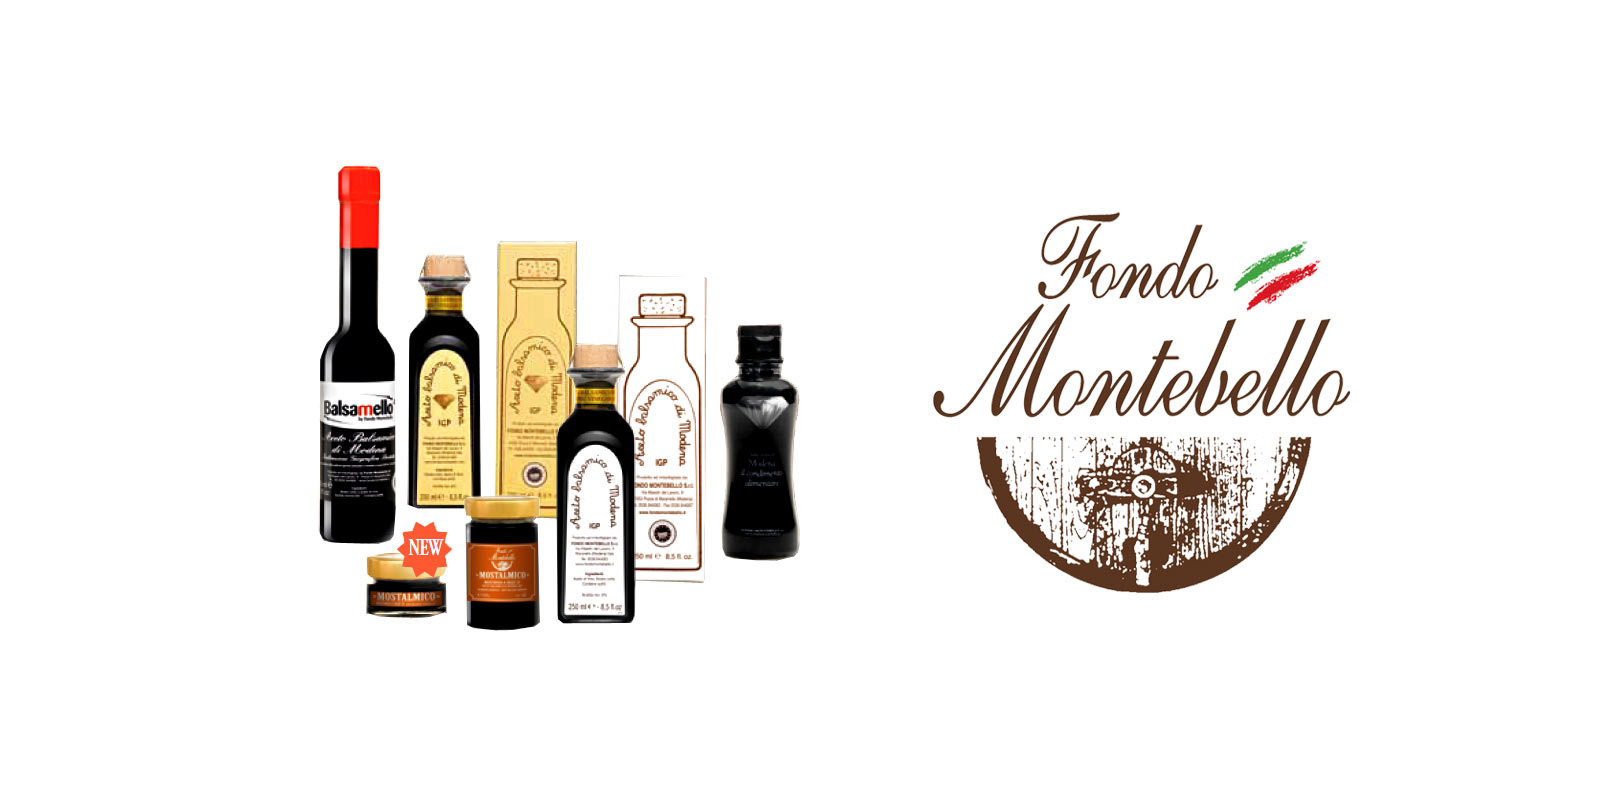 Aceto Balsamico Fondo Montebello Fondo Montebello uporablja starodavne in tradicionalne proizvodne metode za proizvodnjo odlicnega balzamicnega kisa iz regije Maranello v Italiji.